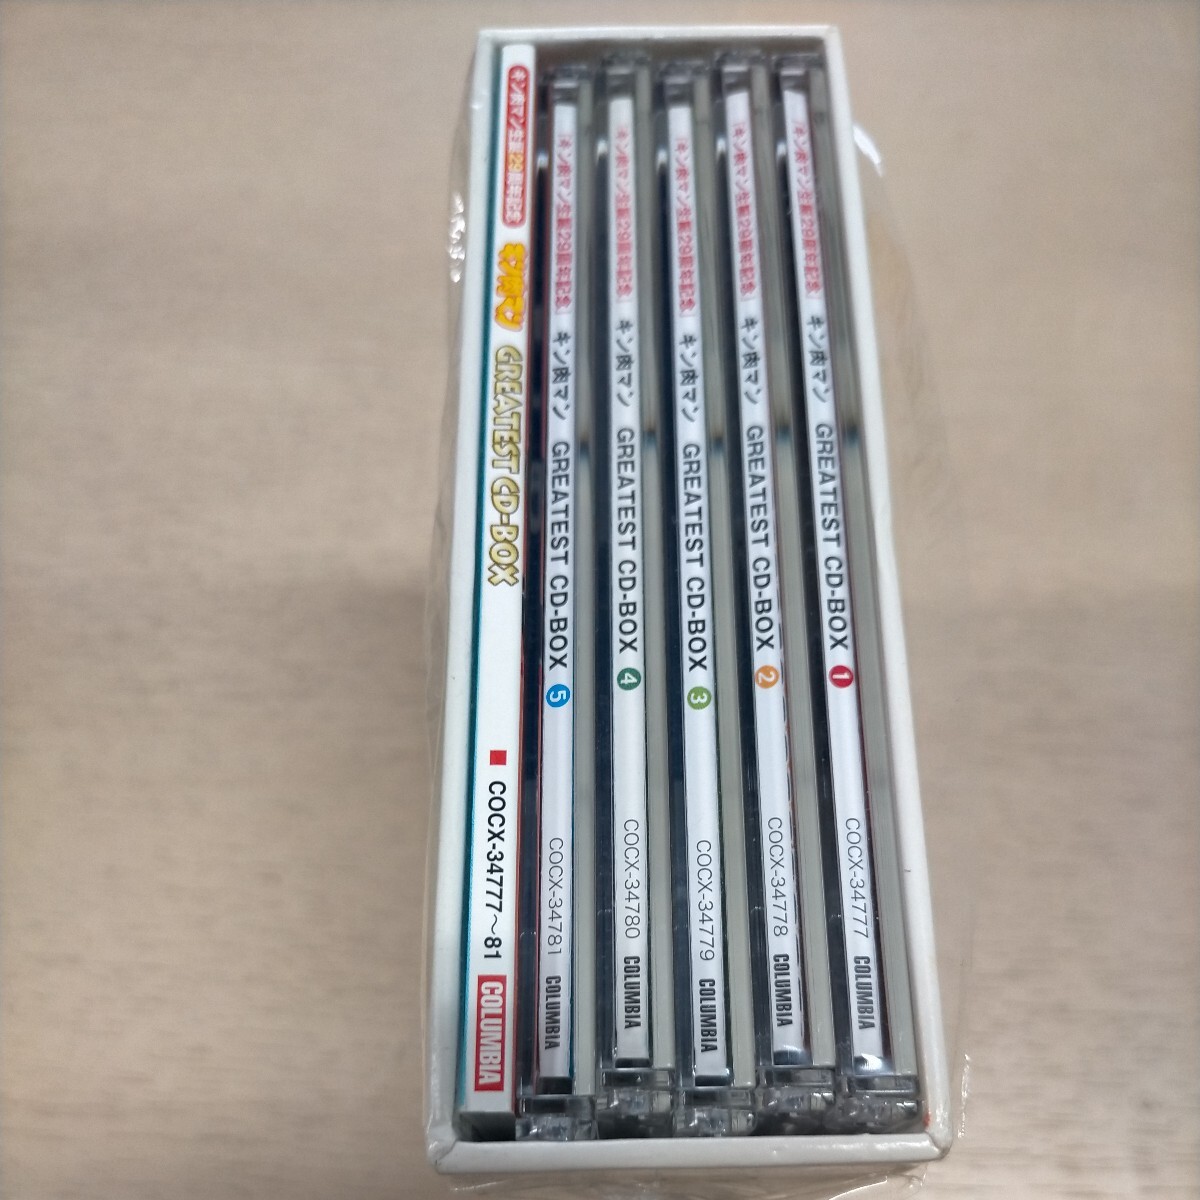  Kinnikuman рождение 29 anniversary commemoration GREATEST CD-BOX* б/у / воспроизведение не проверка / претензии не принимаются ./ текущее состояние доставка / кейс .. потертость немного царапина царапина / Shonen Jump 